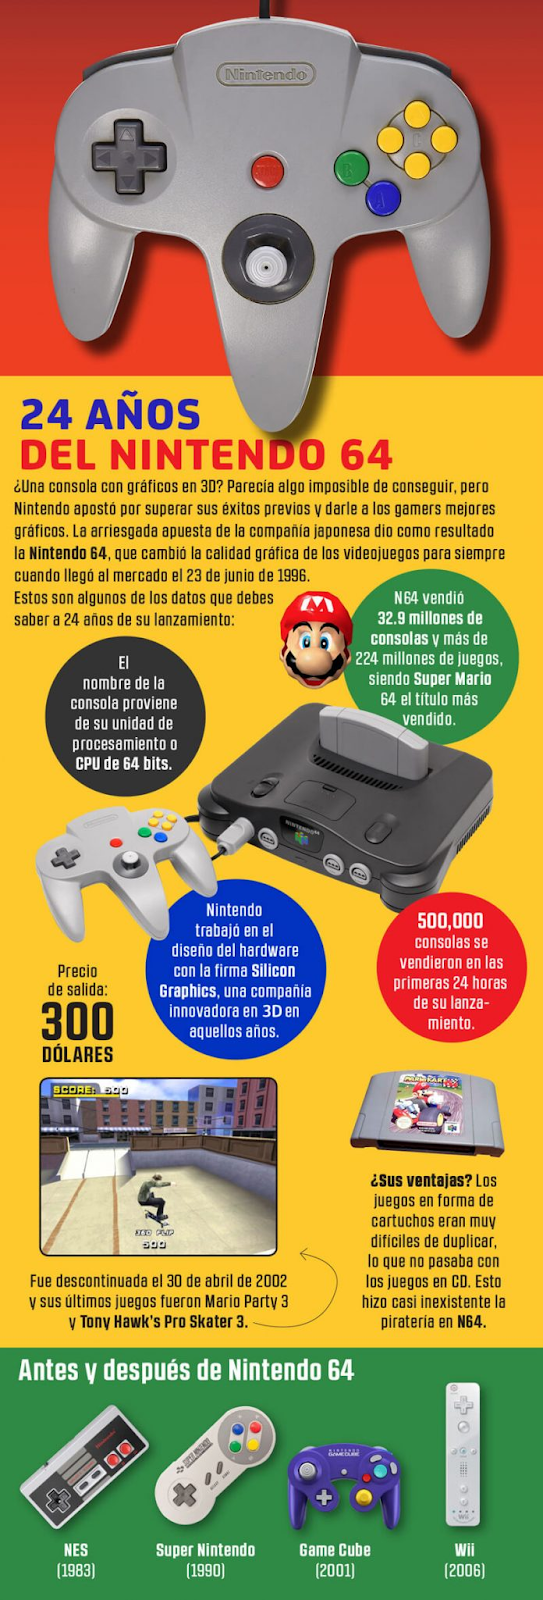 Datos curiosos de Nintendo 64 a 24 años de su lanzamiento